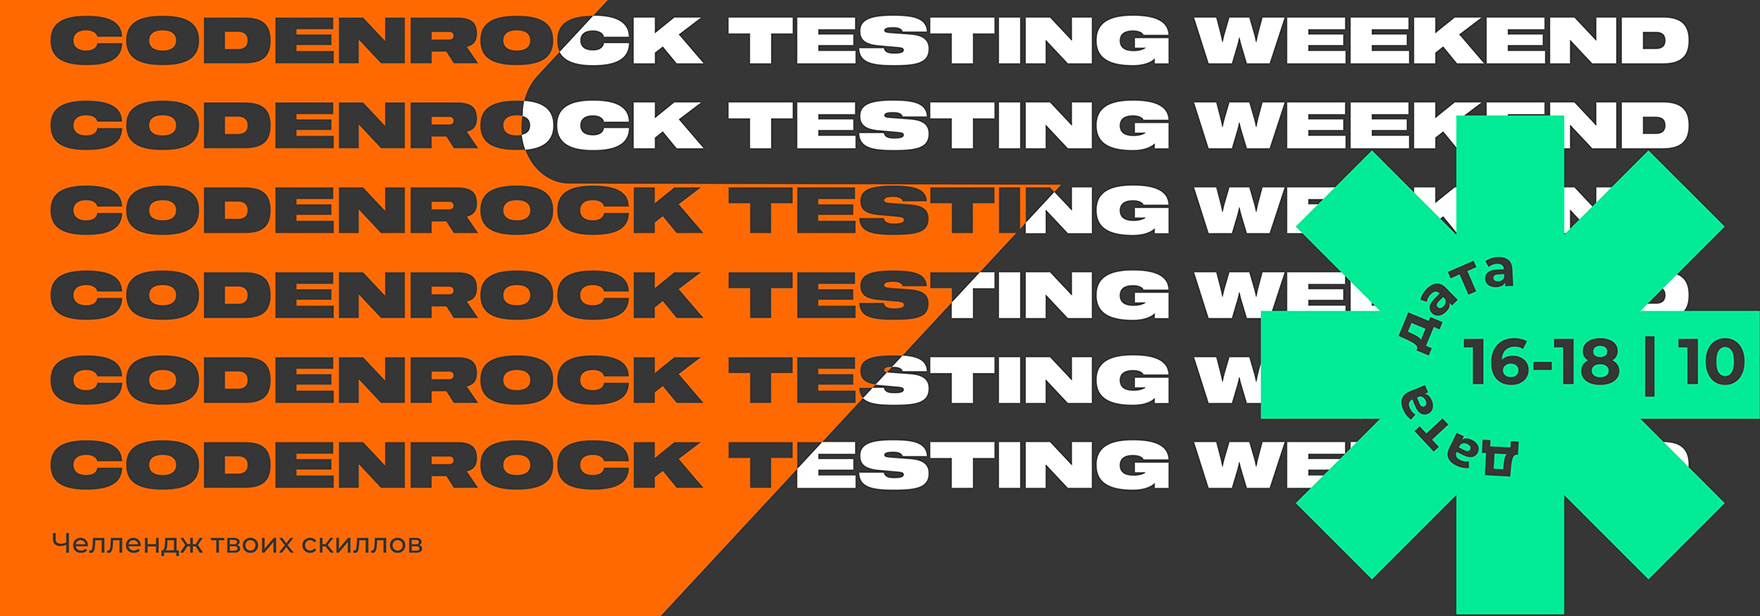 Конкурс Codenrock Testing Weekend